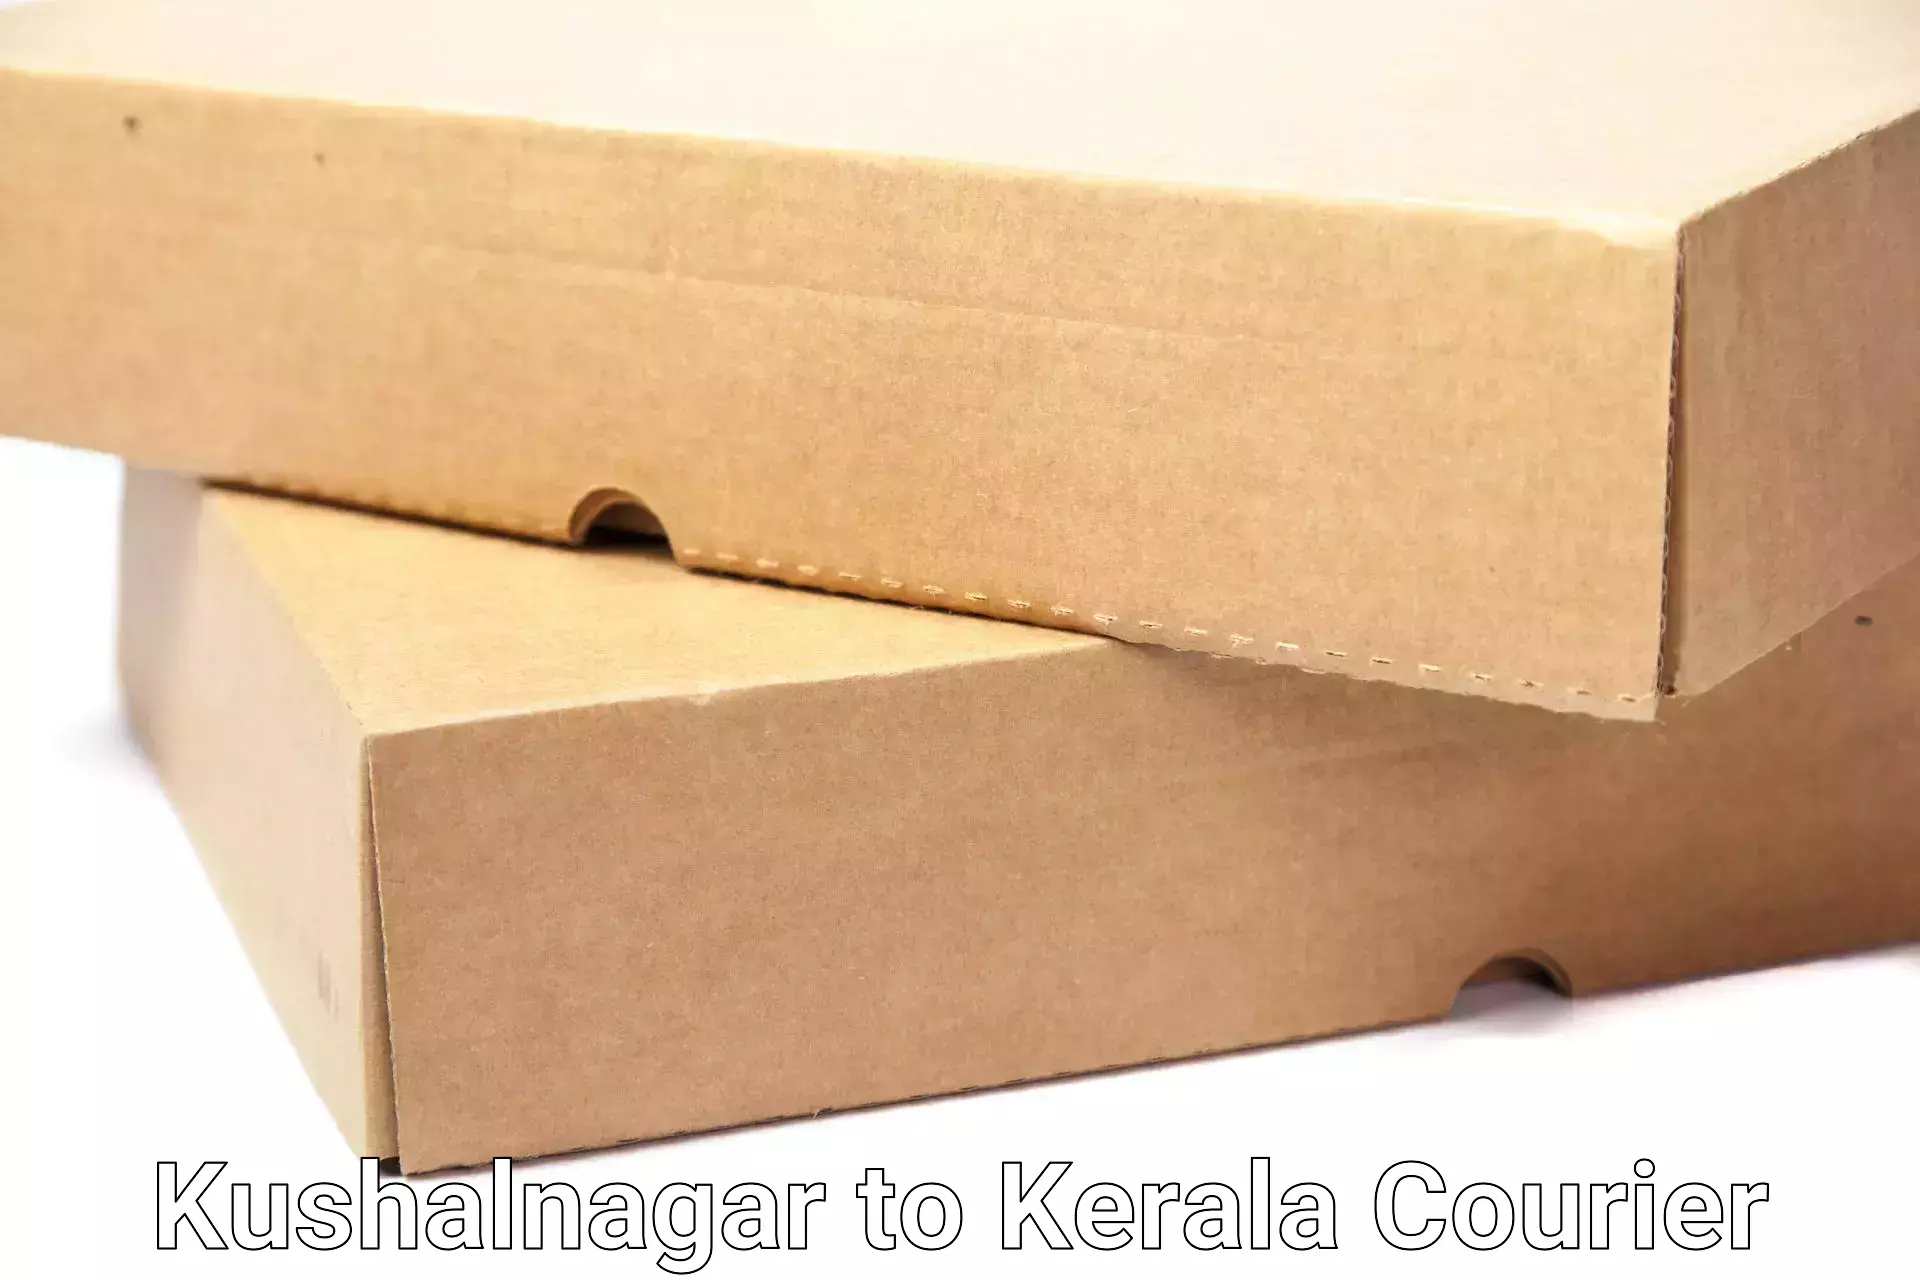 Home goods moving company Kushalnagar to Mundakayam